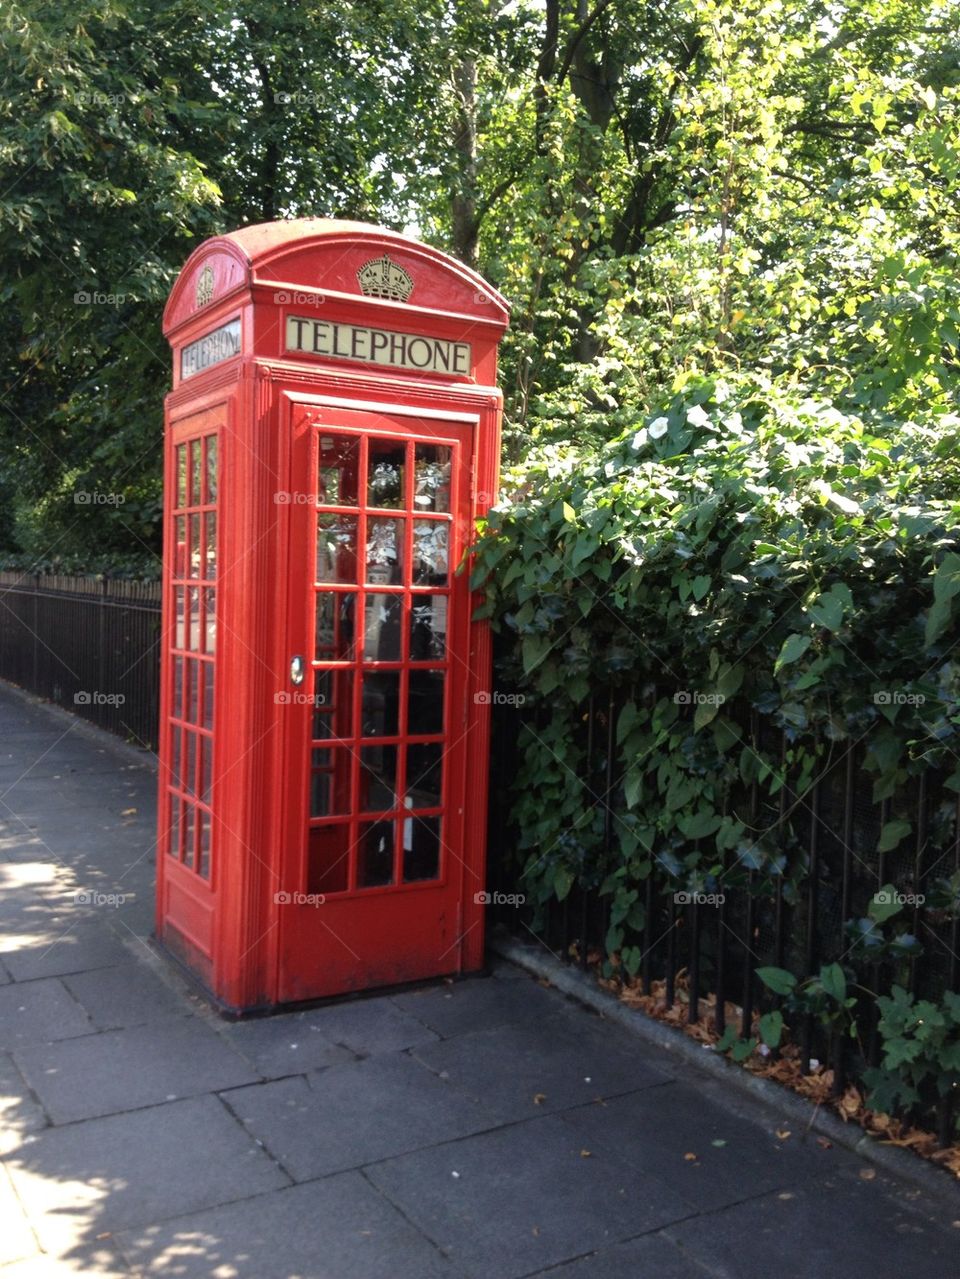 British phone box